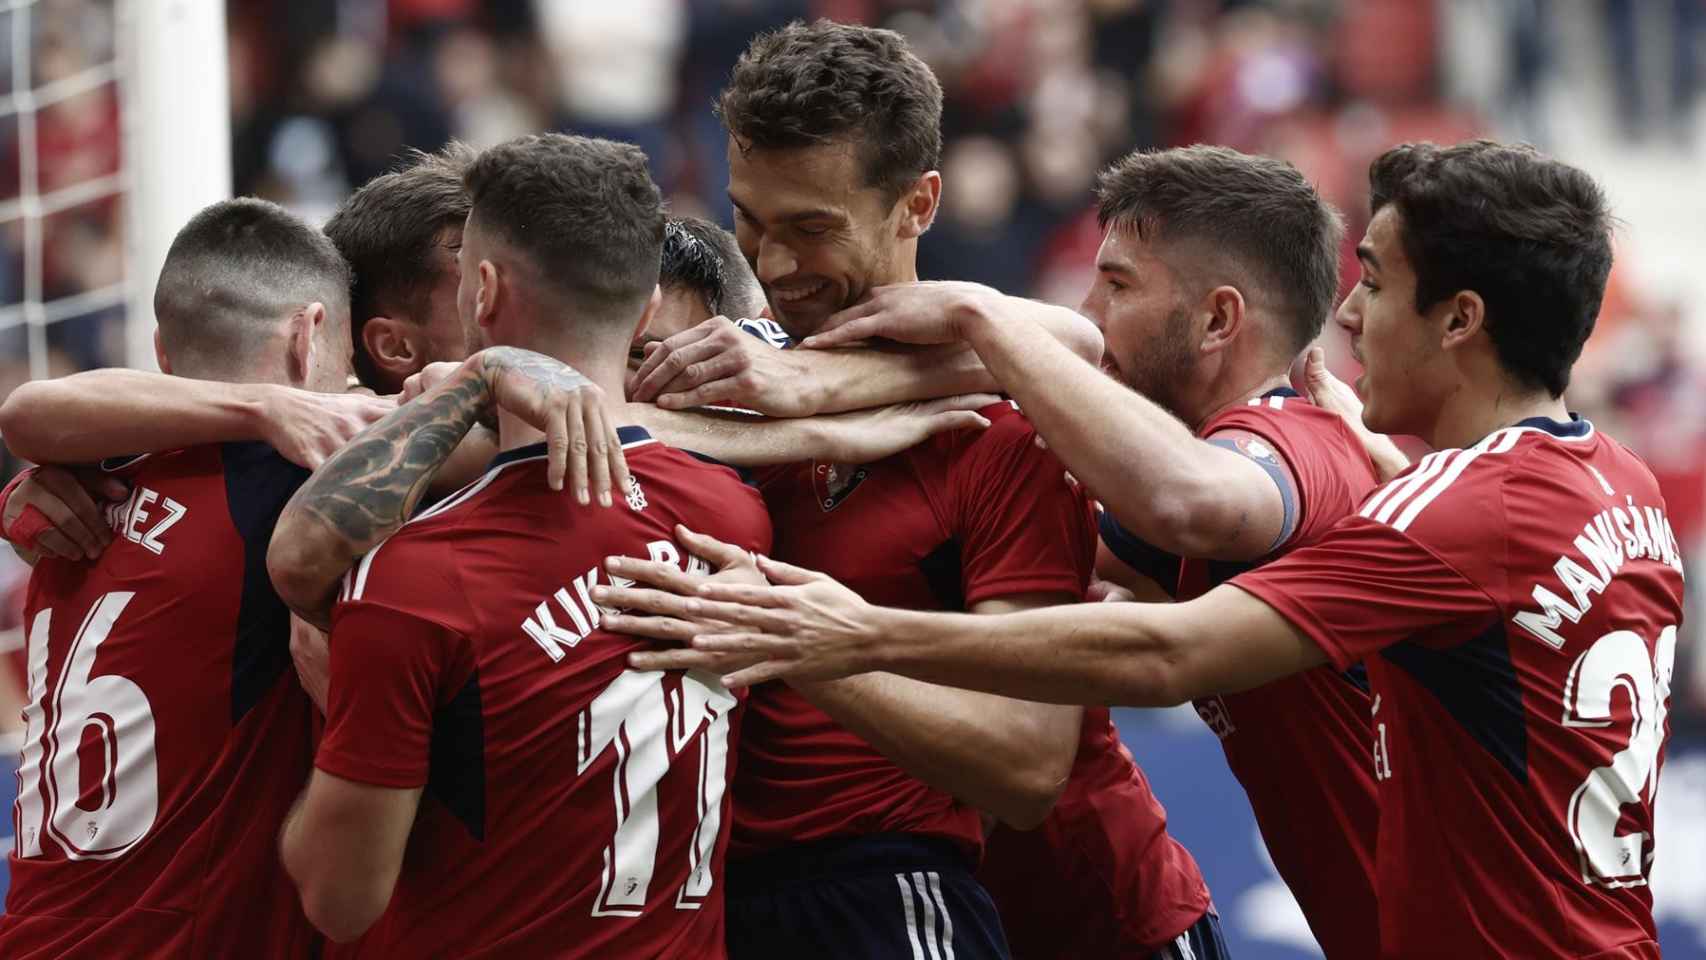 Piña de los jugadores de Osasuna para celebrar un gol ante el Valladolid